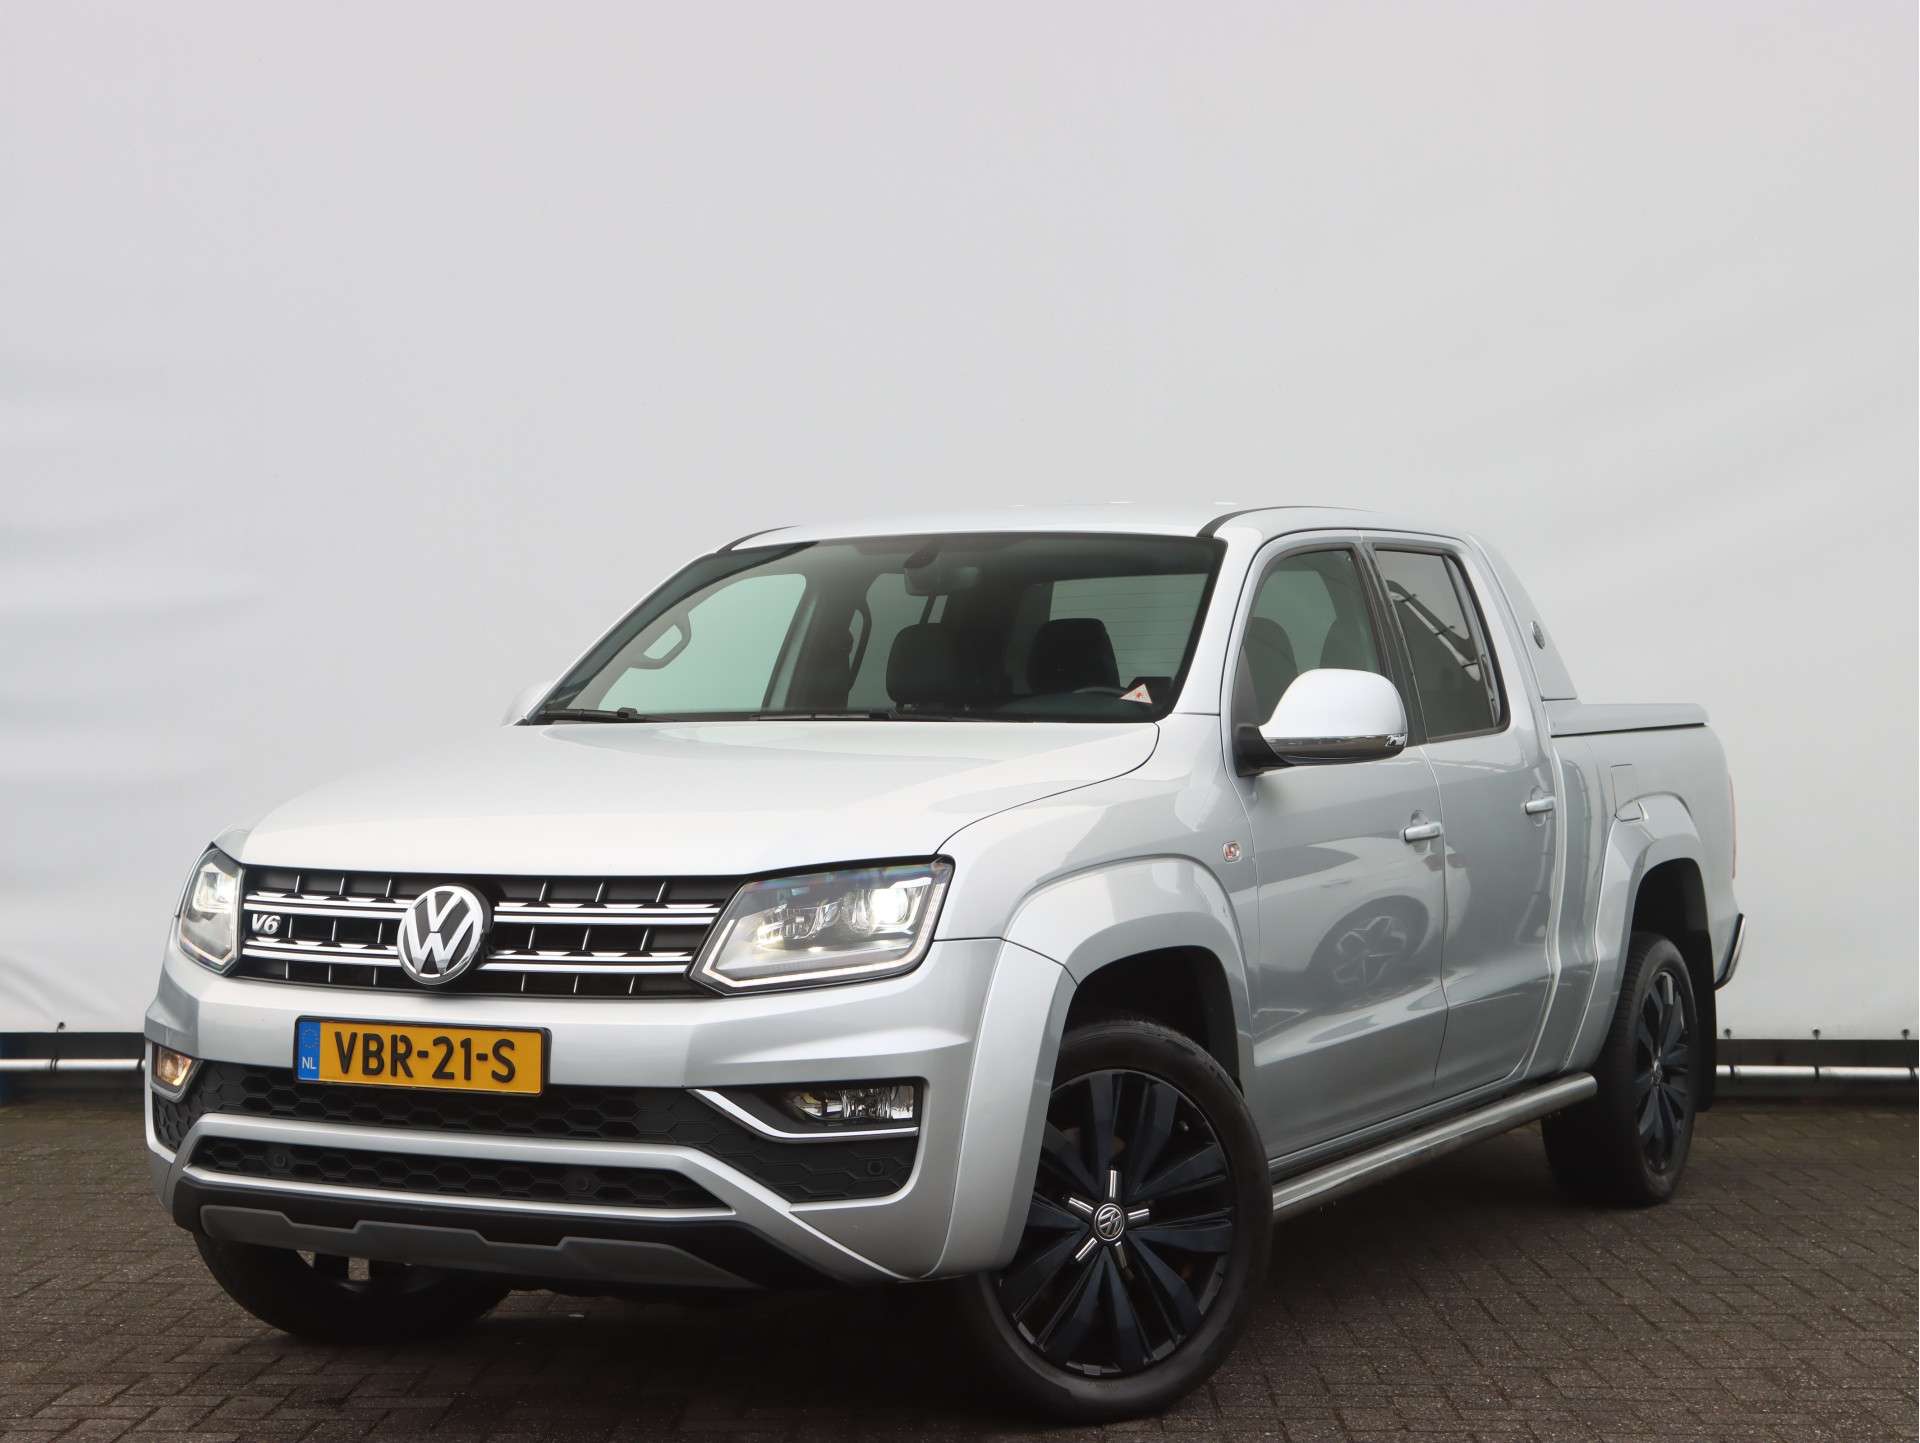 Volkswagen Amarok Transporter in Silver used in SNEEK for € 57,475.-